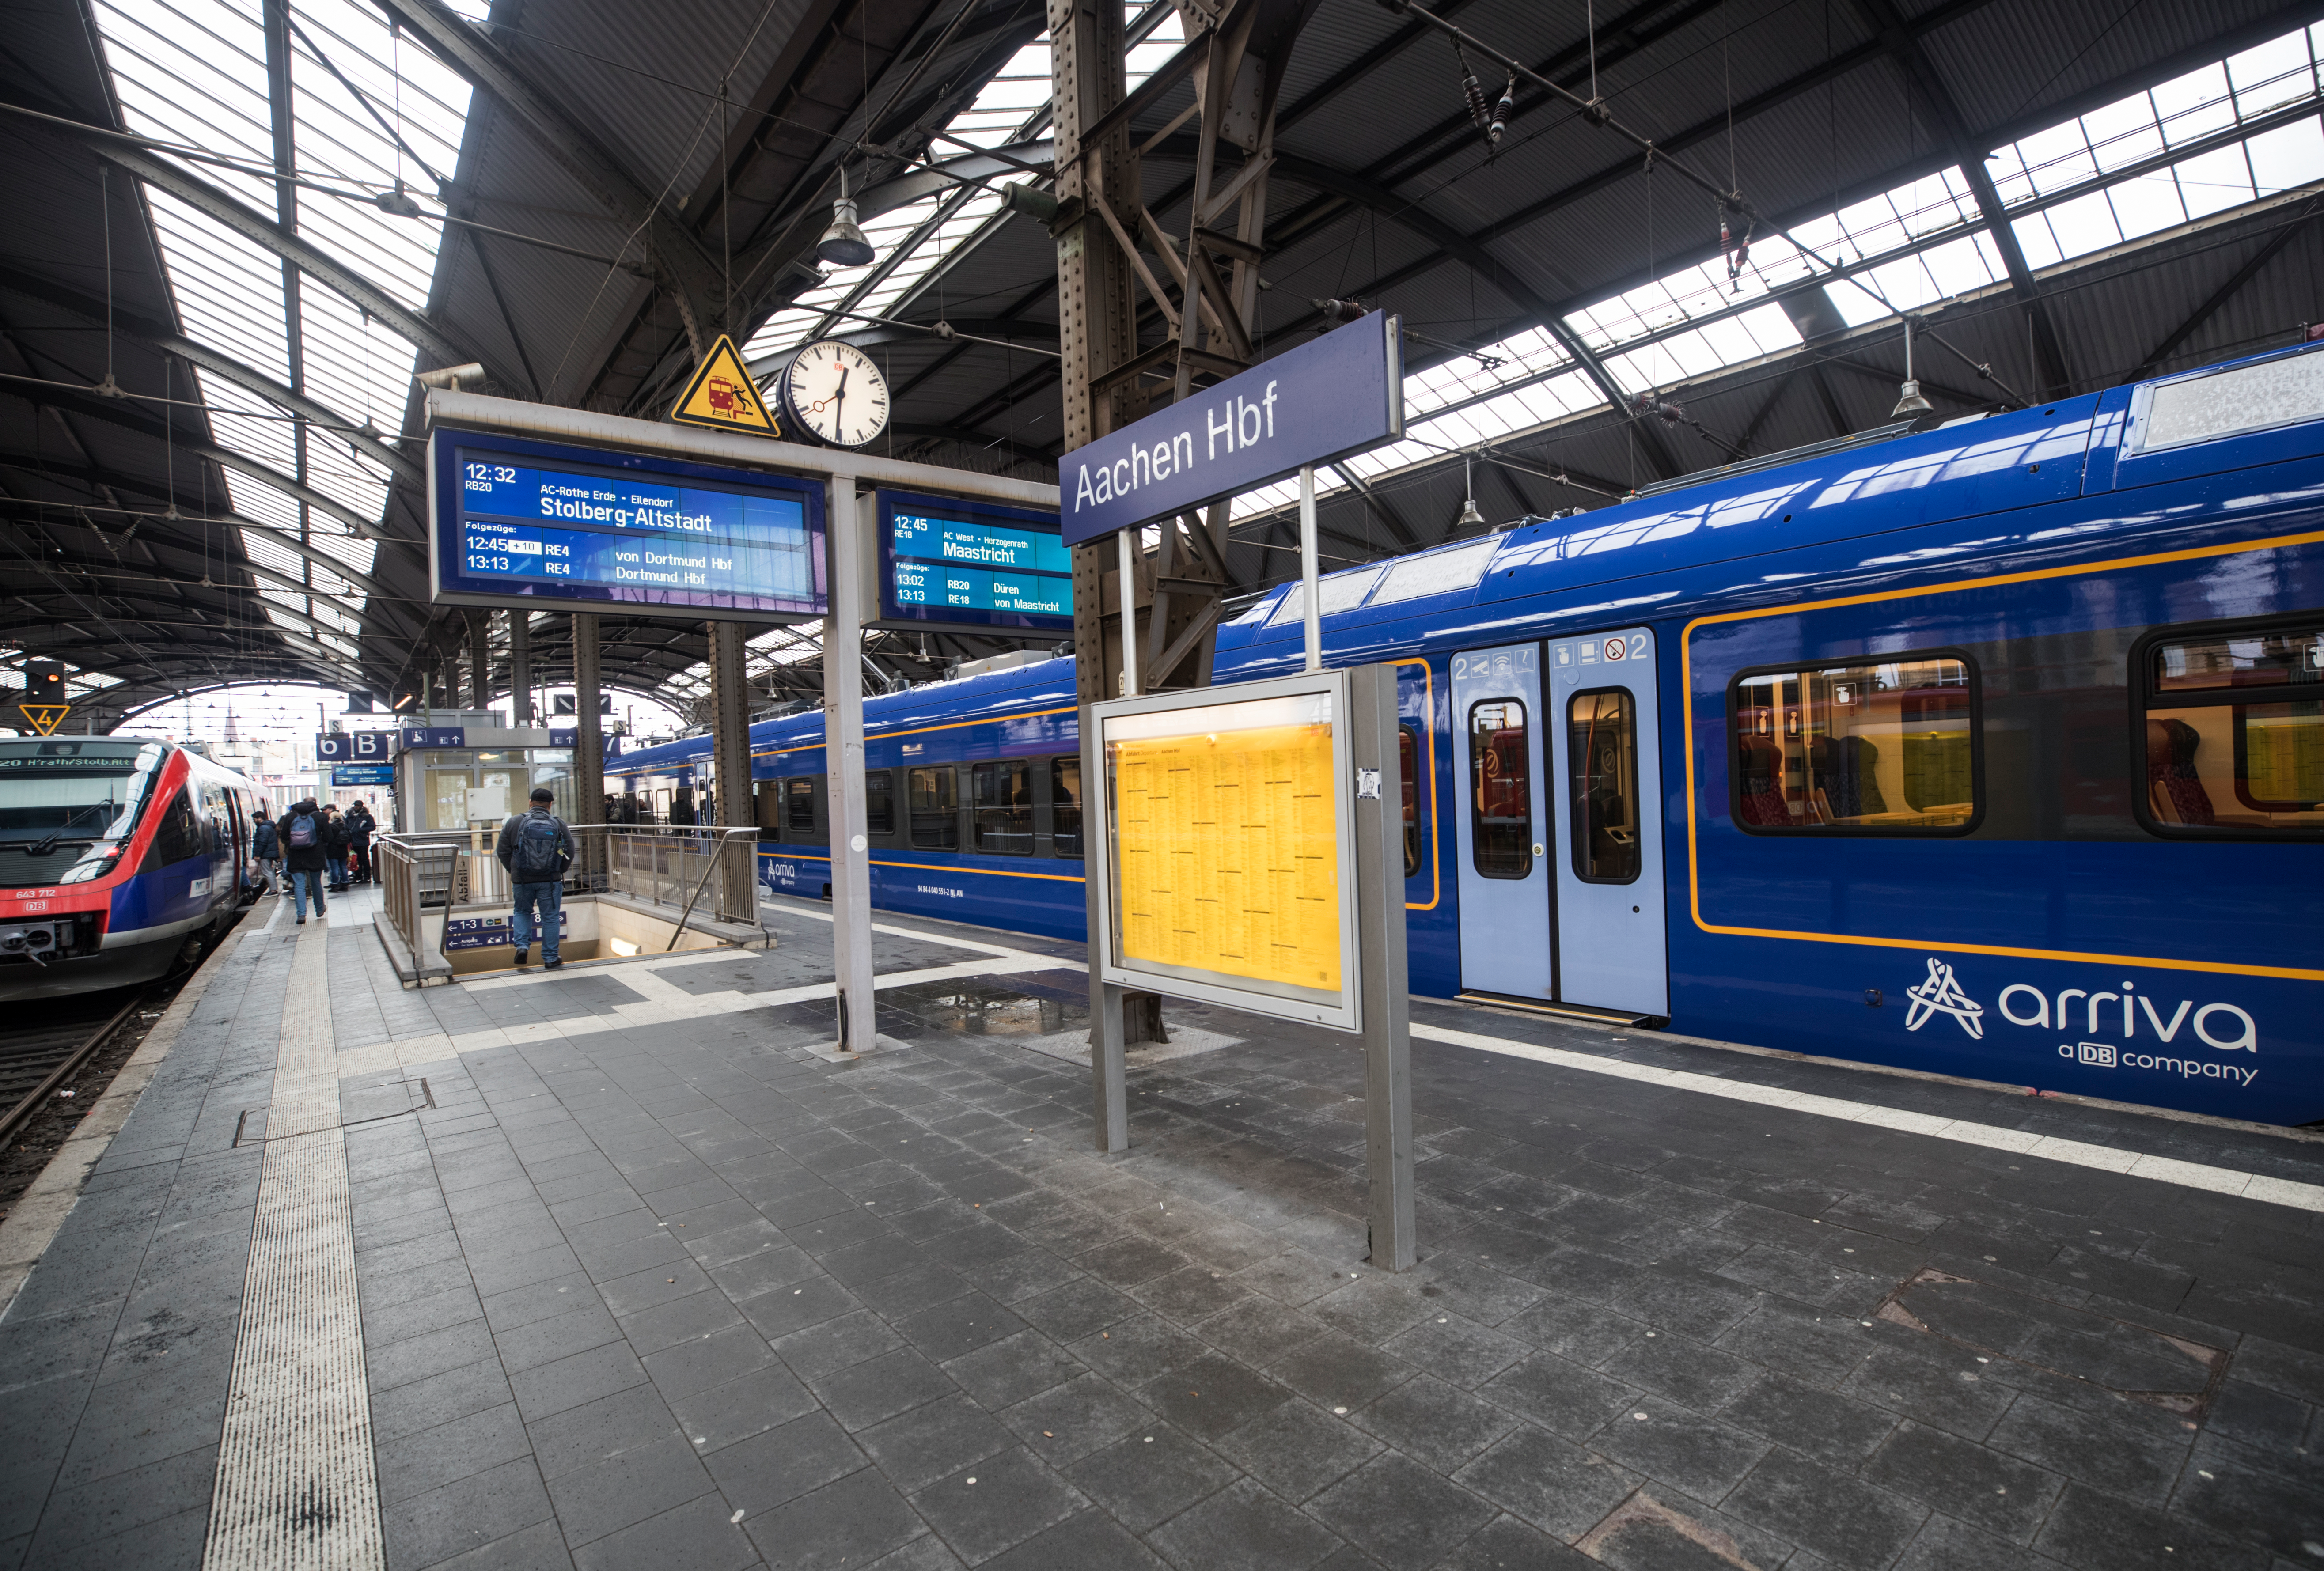 Blauwe trein van Arriva staat bij een perron op het station van Aken (Aachen) in Duitsland met bestemming Maastricht op het vertrekbord.